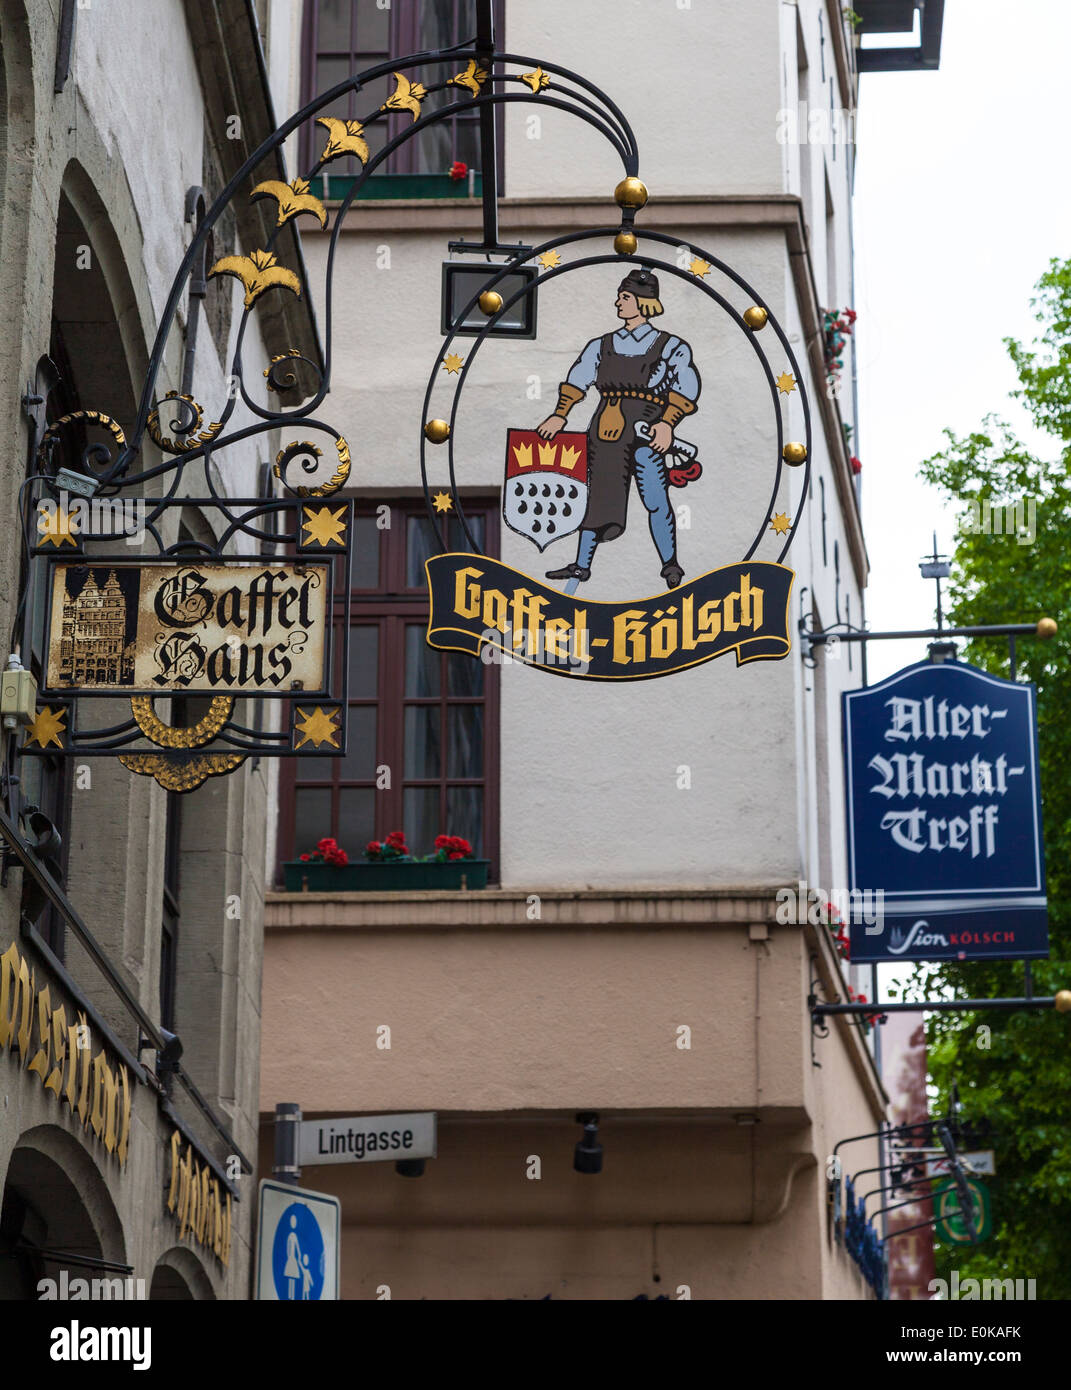 German beer sign for Kolsch beer Stock Photo